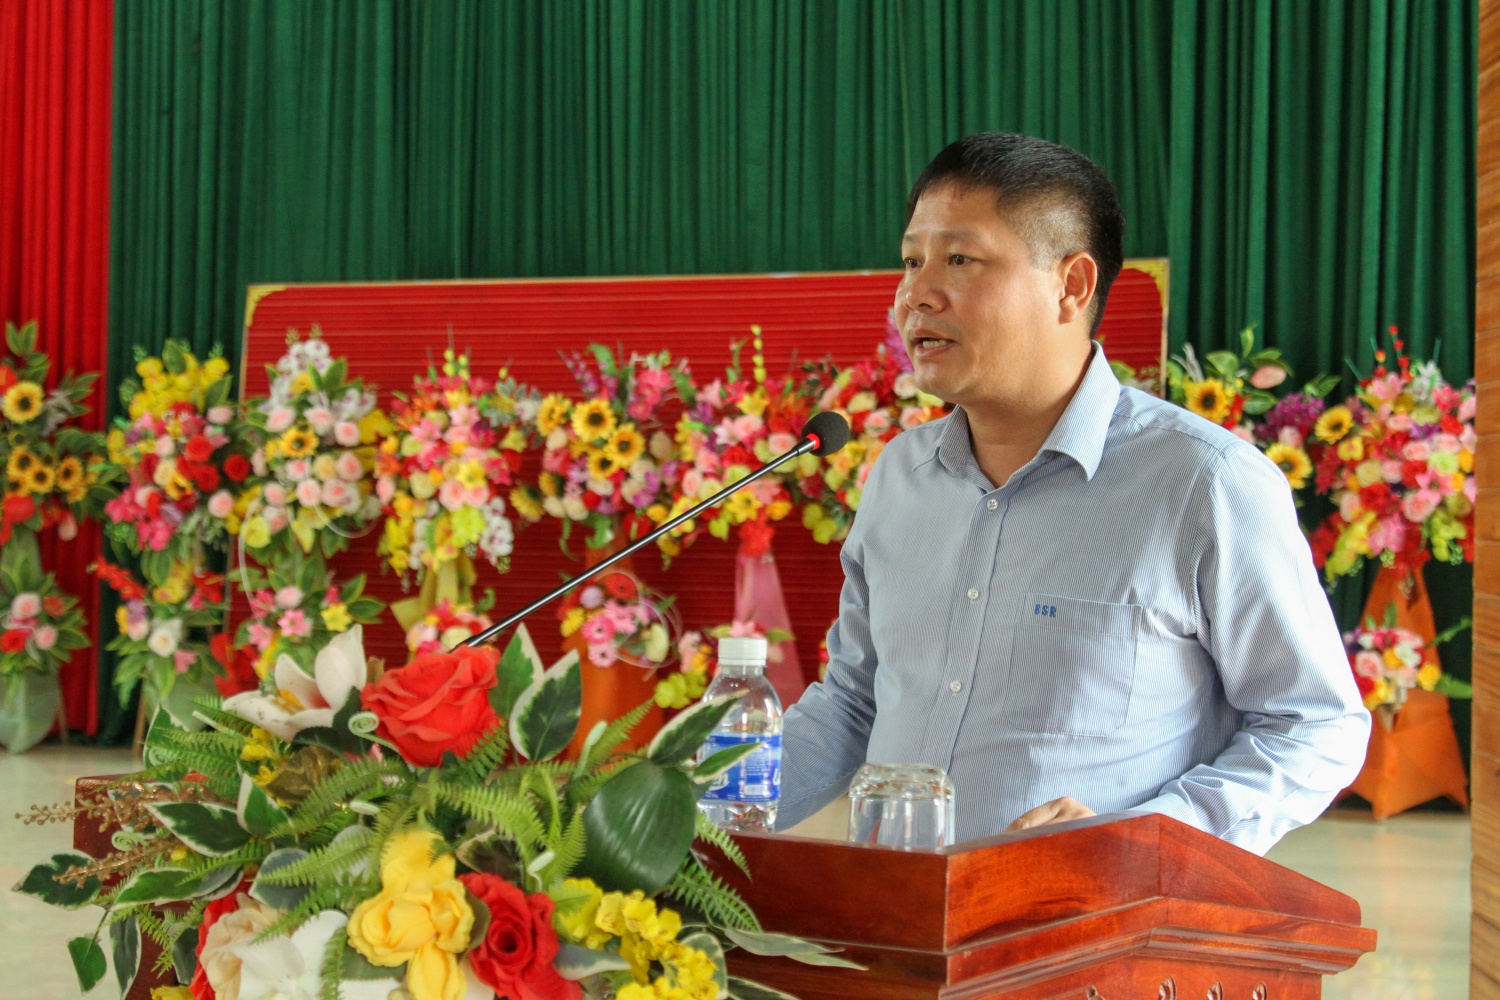 BSR tổ chức về nguồn và thực hiện an sinh xã tại quê hương Chủ tịch Hồ Chí Minh